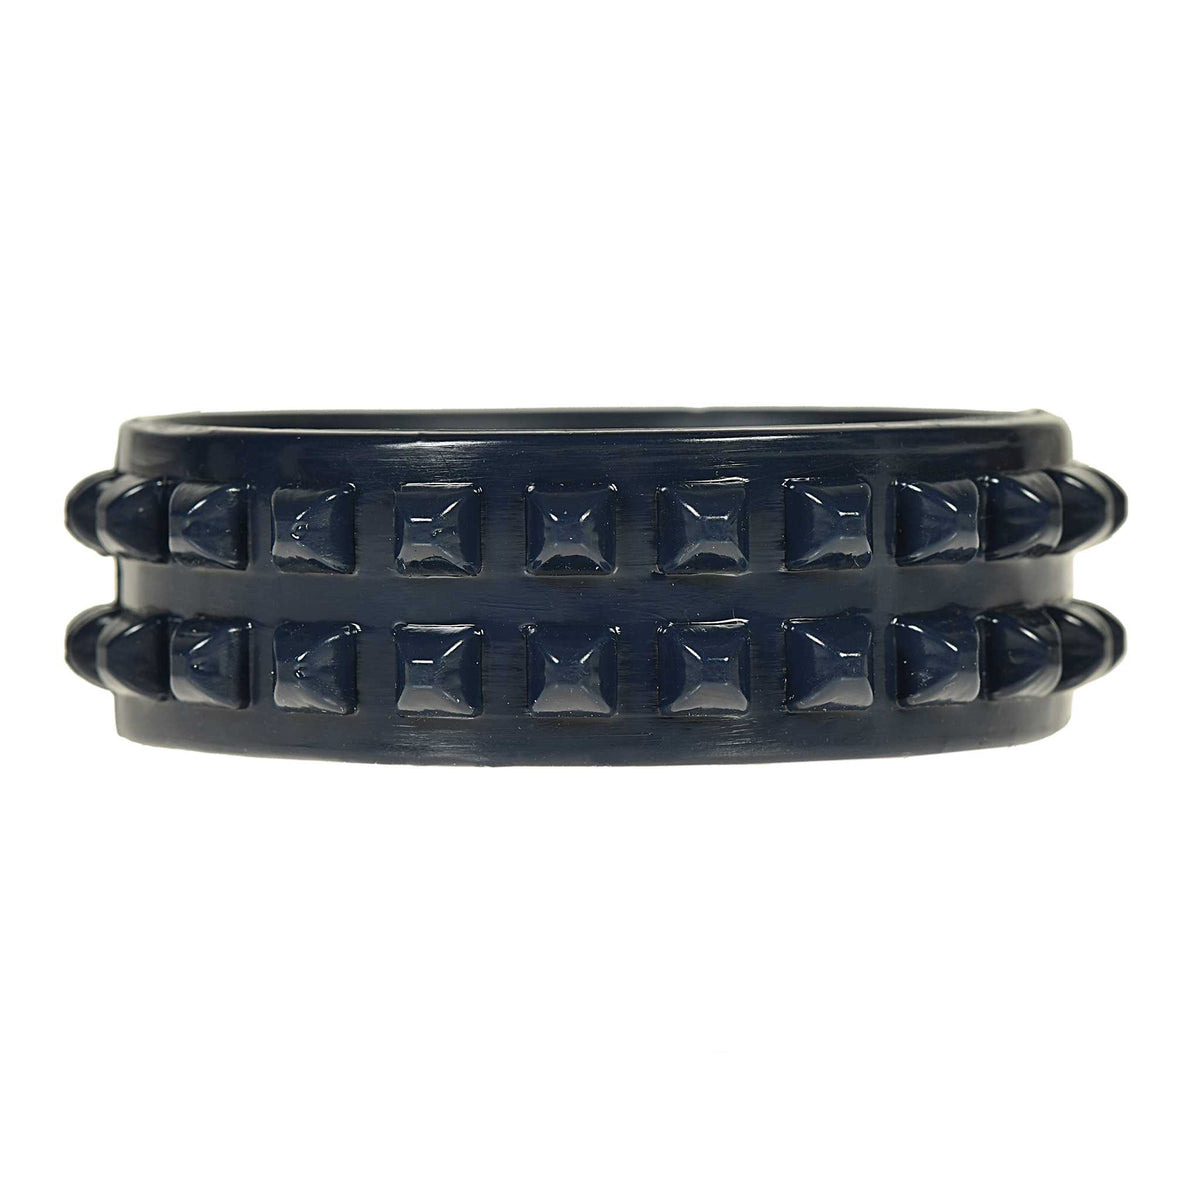 Navy blue jelly bracelets with studs